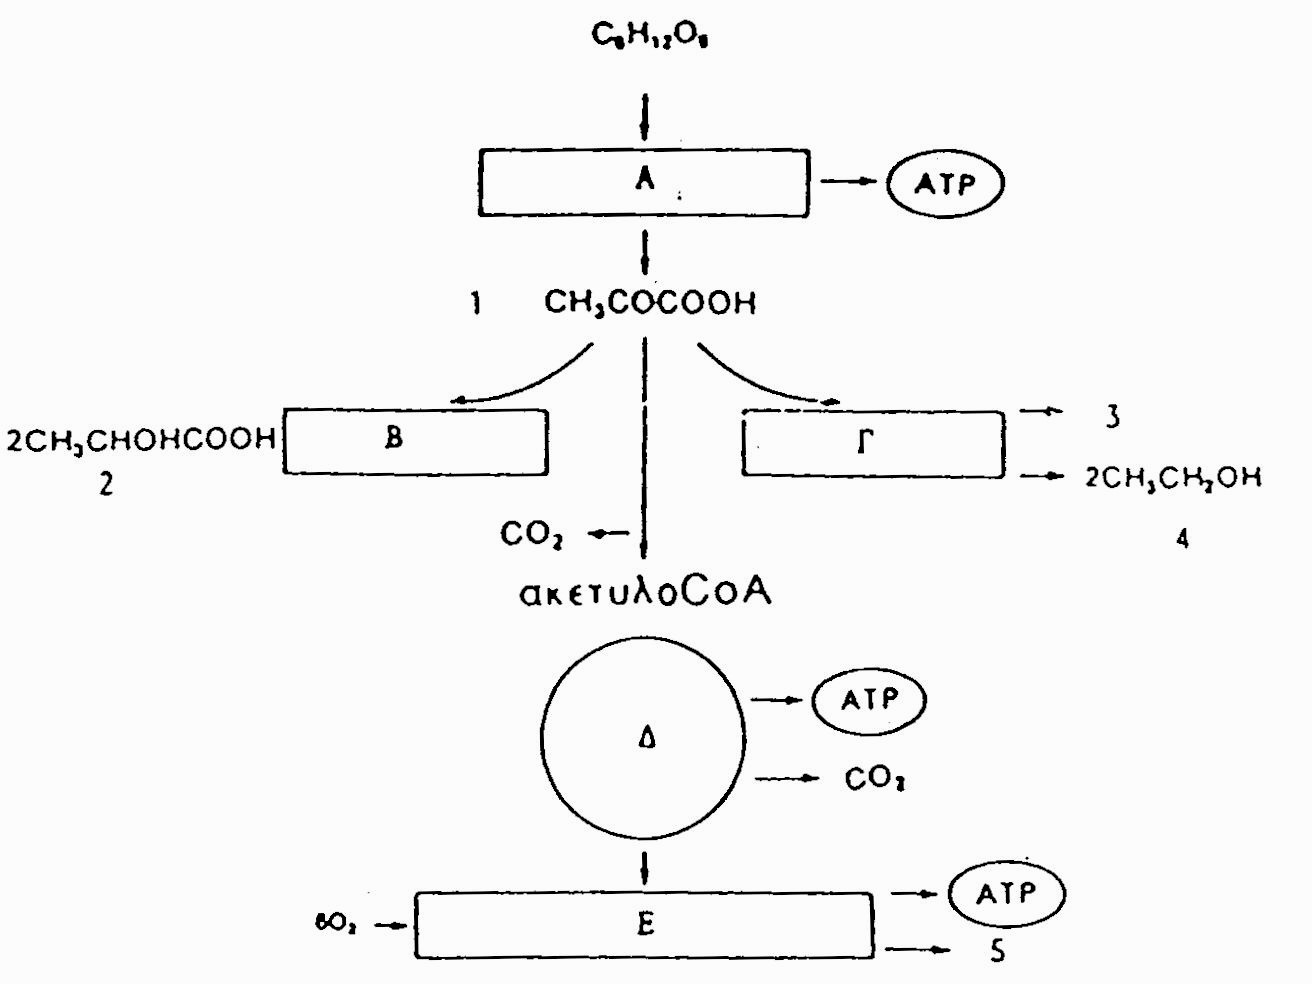 21. (α)ποια στάδια και ποιες χημικές ενώσεις της κυτταρικής αναπνοής παριστάνουν αντίστοιχα τα γράμματα